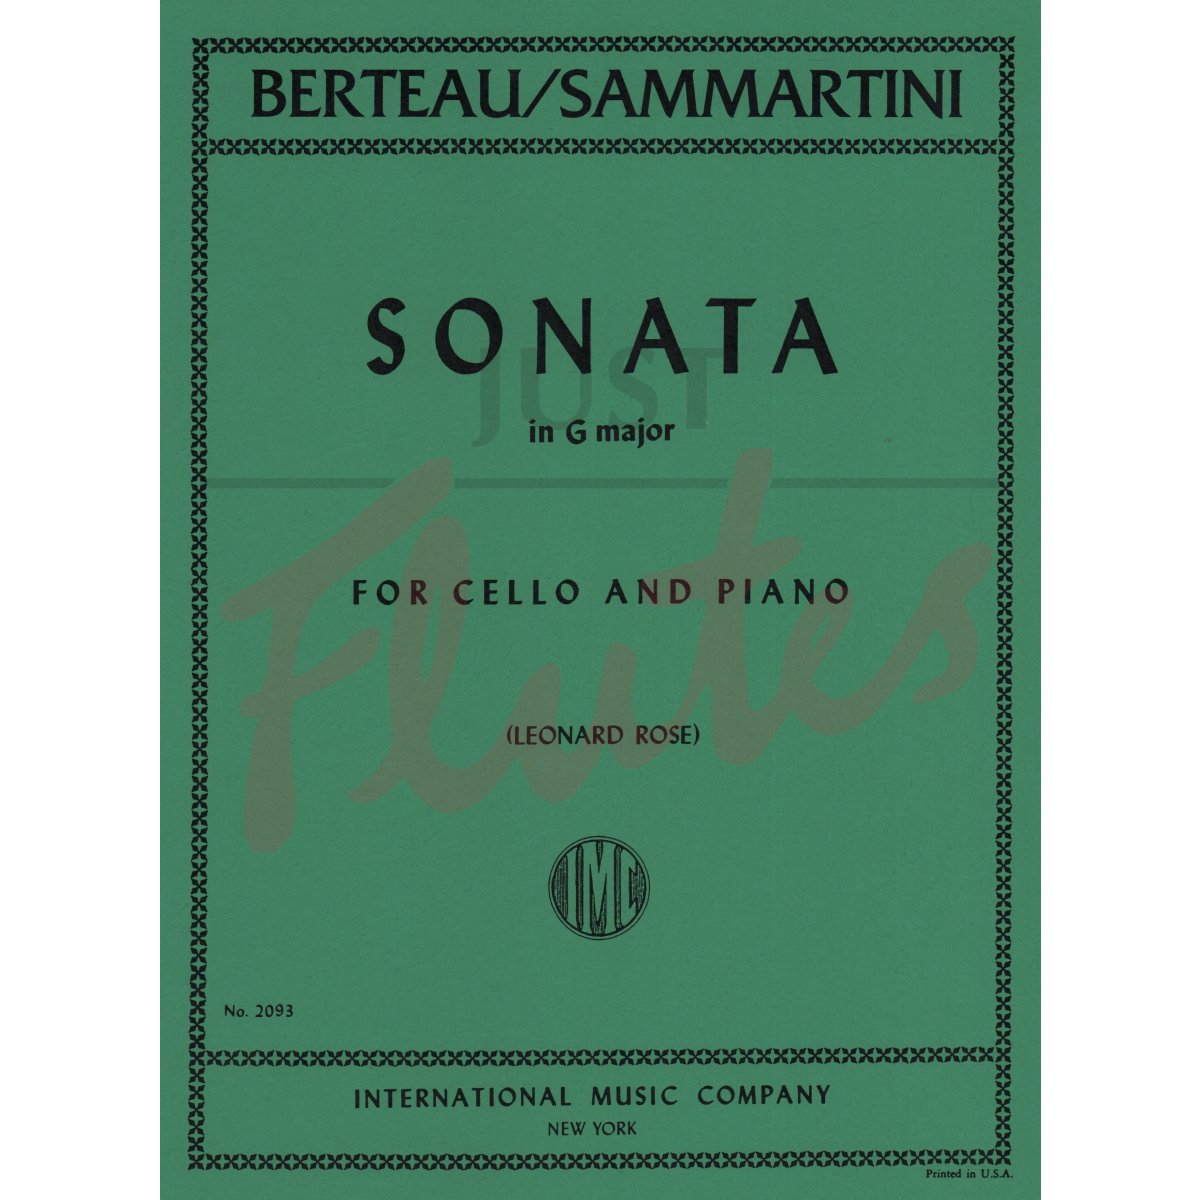 Sonata in G major for Cello and Piano